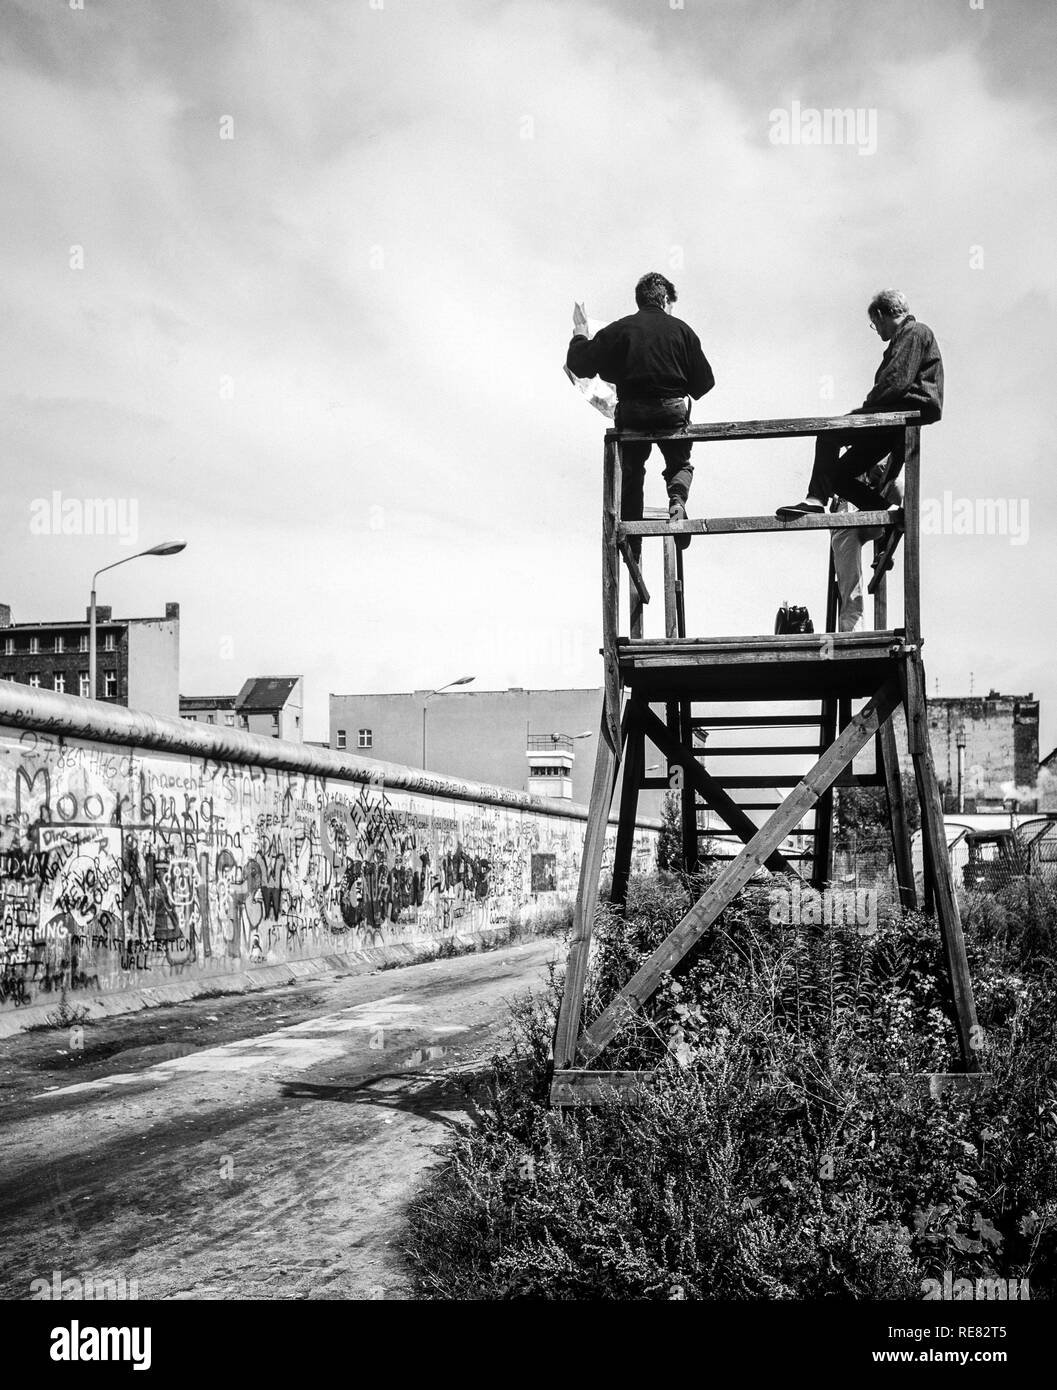 Août 1986, les graffitis du mur de Berlin, les gens sur la plate-forme d'observation à la Zimmerstrasse, au-dessus du mur de Berlin ouest, rue Côté, l'Allemagne, l'Europe, Banque D'Images